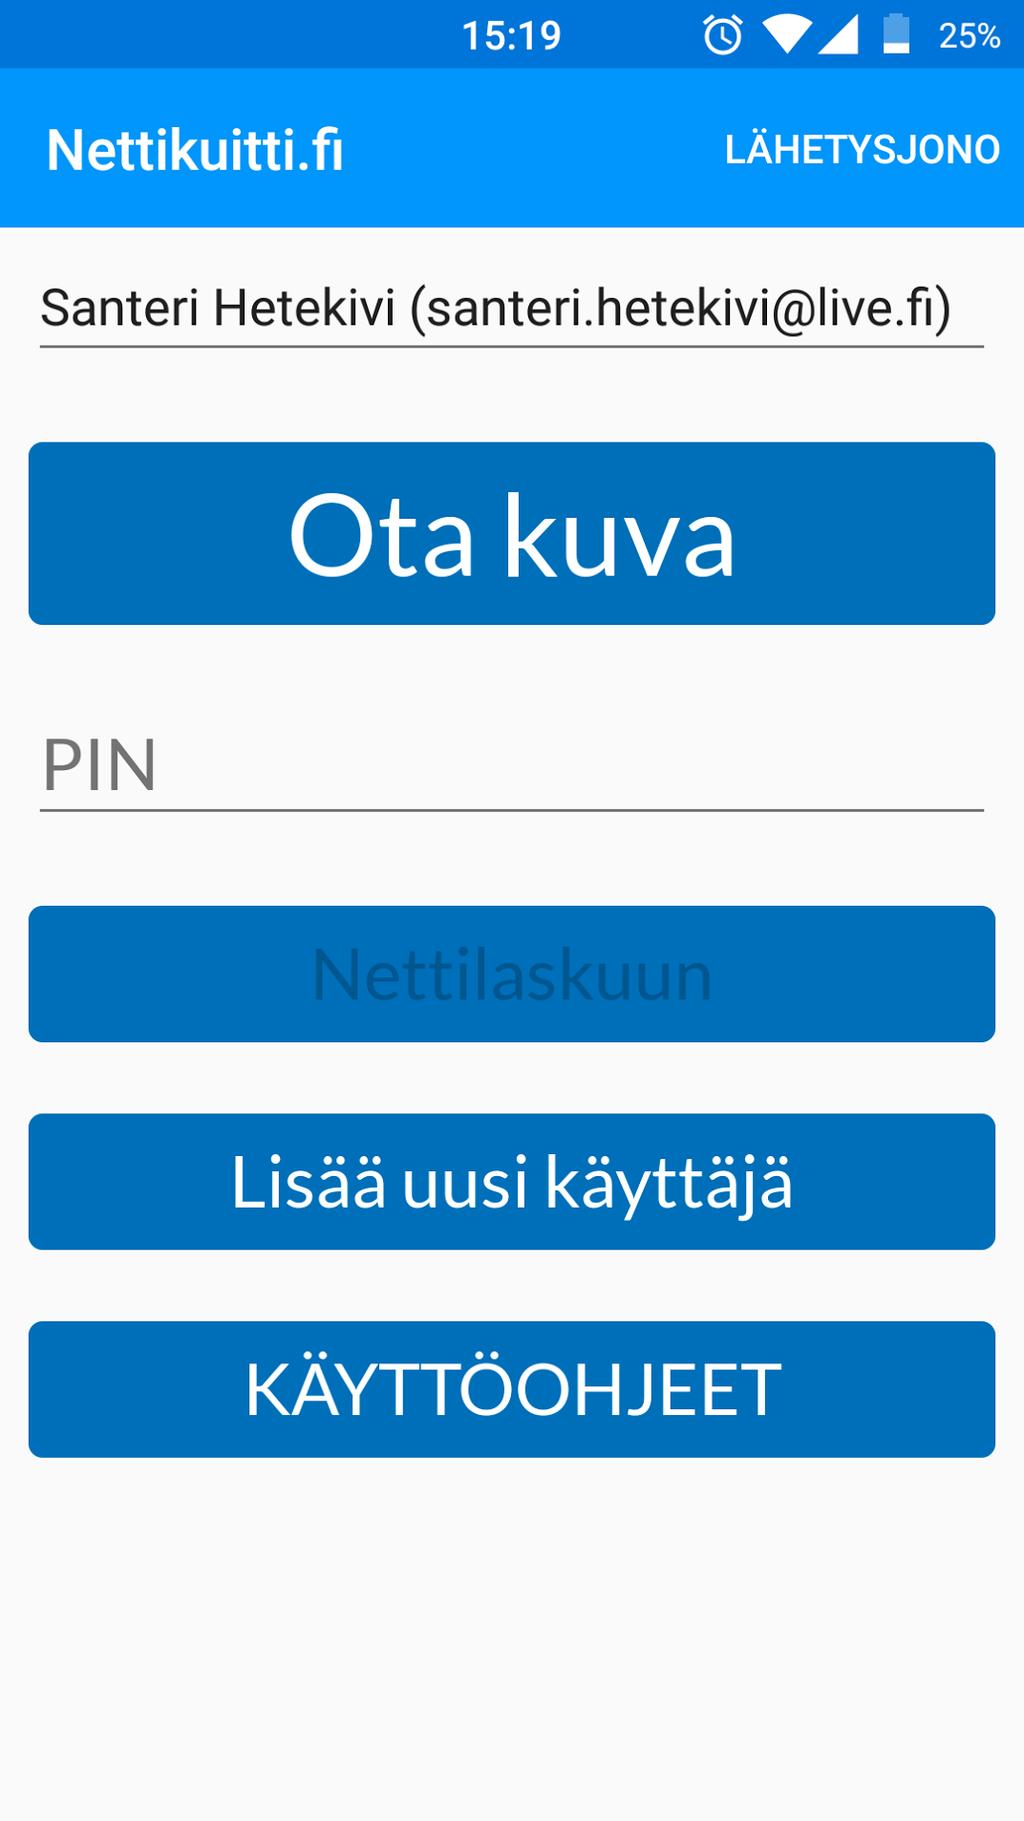 32 KUVA 21. Nettikuitti.fi sovelluksen PIN etusivu ja PIN tunnistautuminen. Tältä etusivulta käyttäjä pystyi siirtymään Nettilasku.